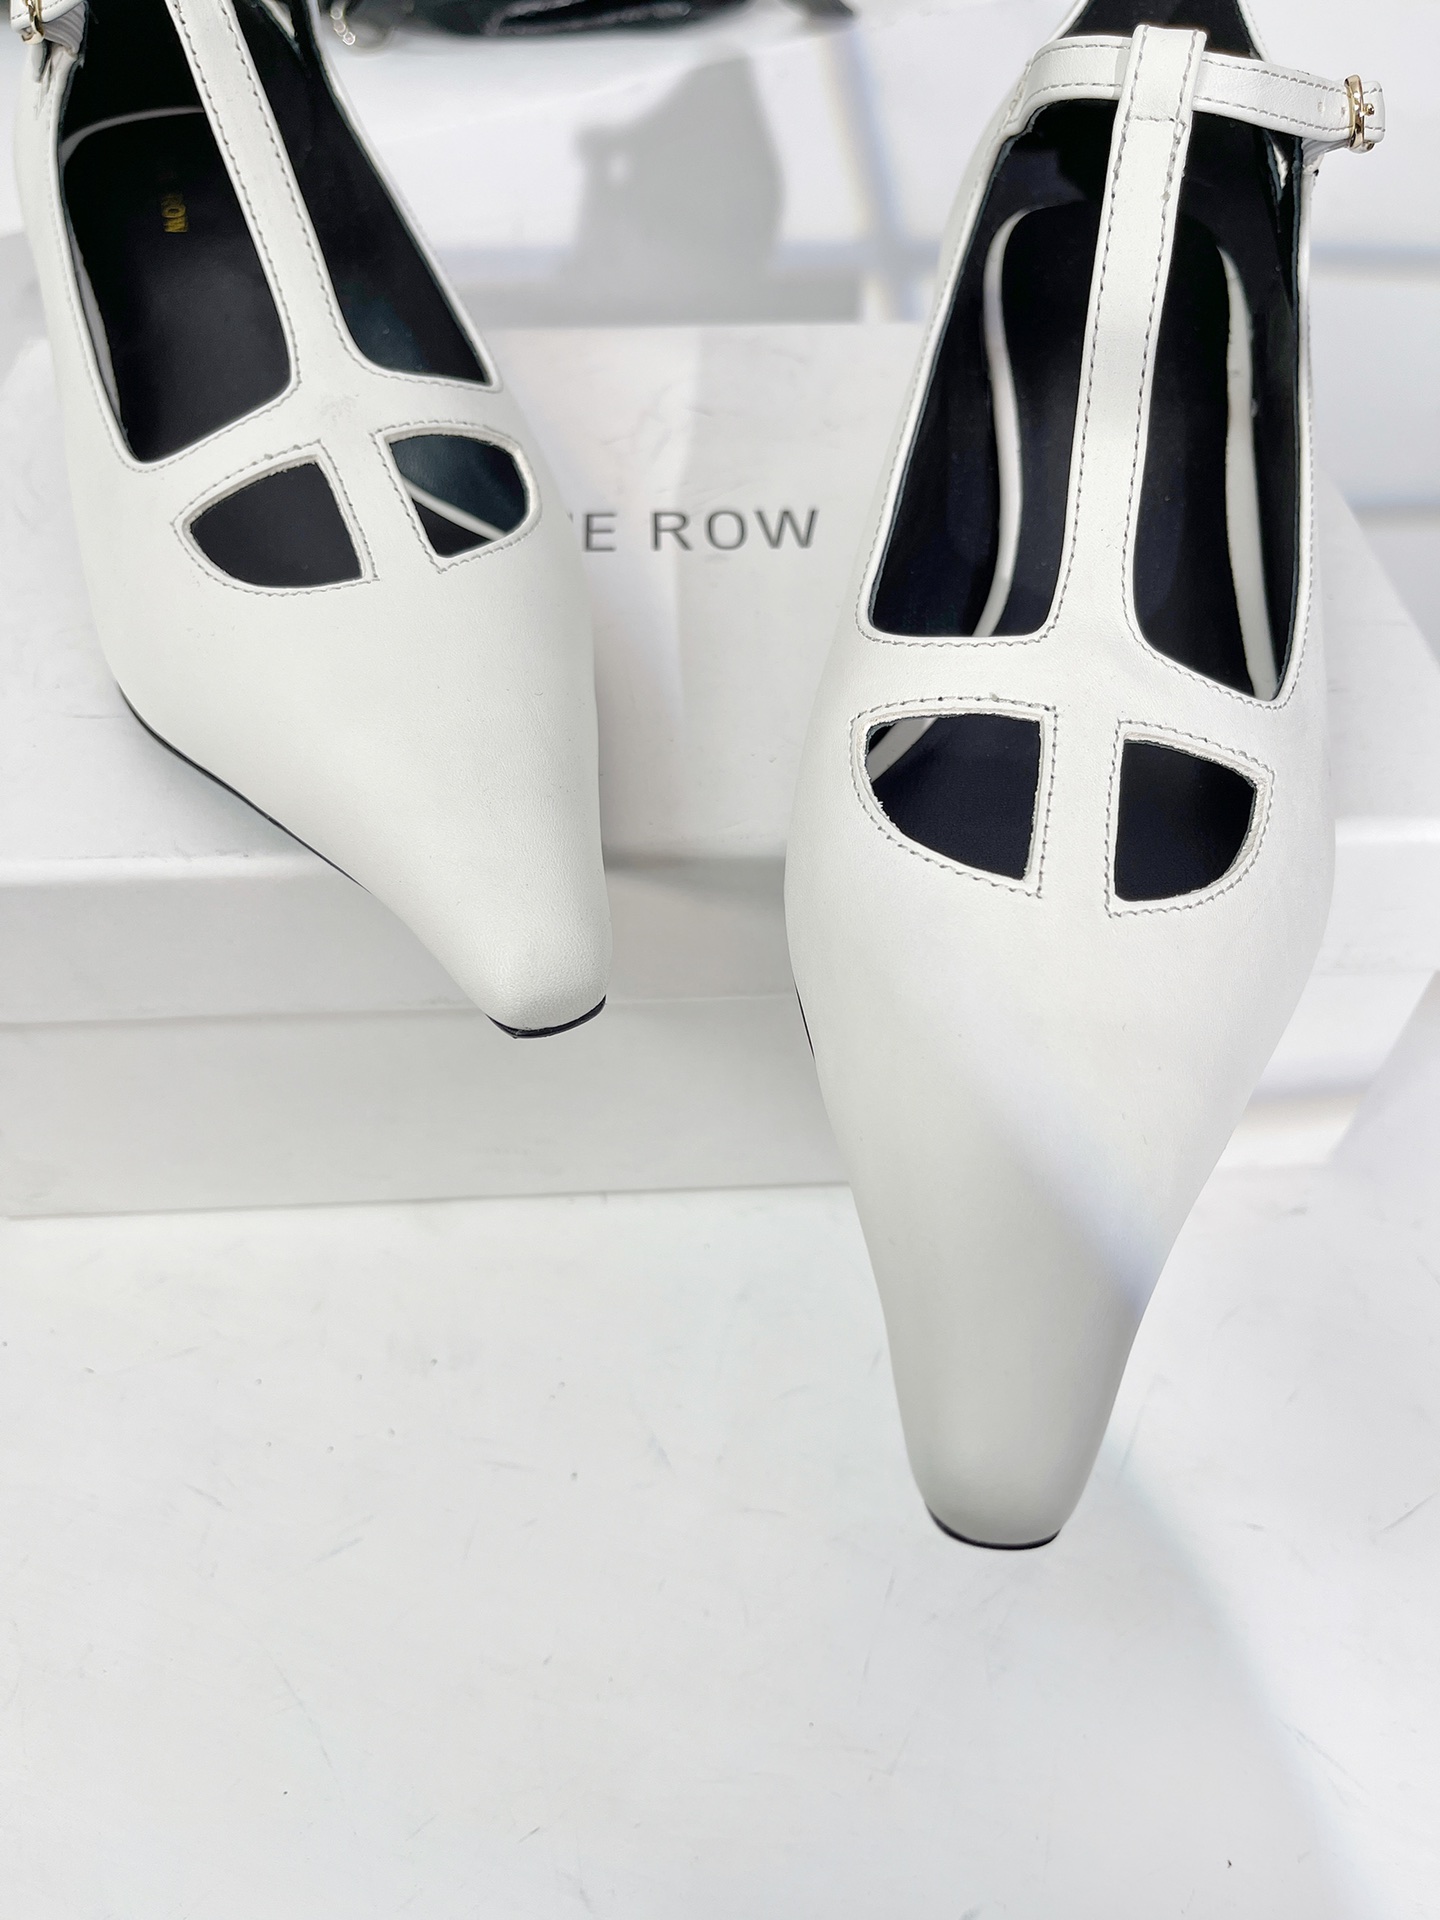 Therow23新款T带猫跟尖头单鞋上脚舒适穿上就是美美的小仙女质感也是杠杠的搭配长裙和阔腿裤都是可以的